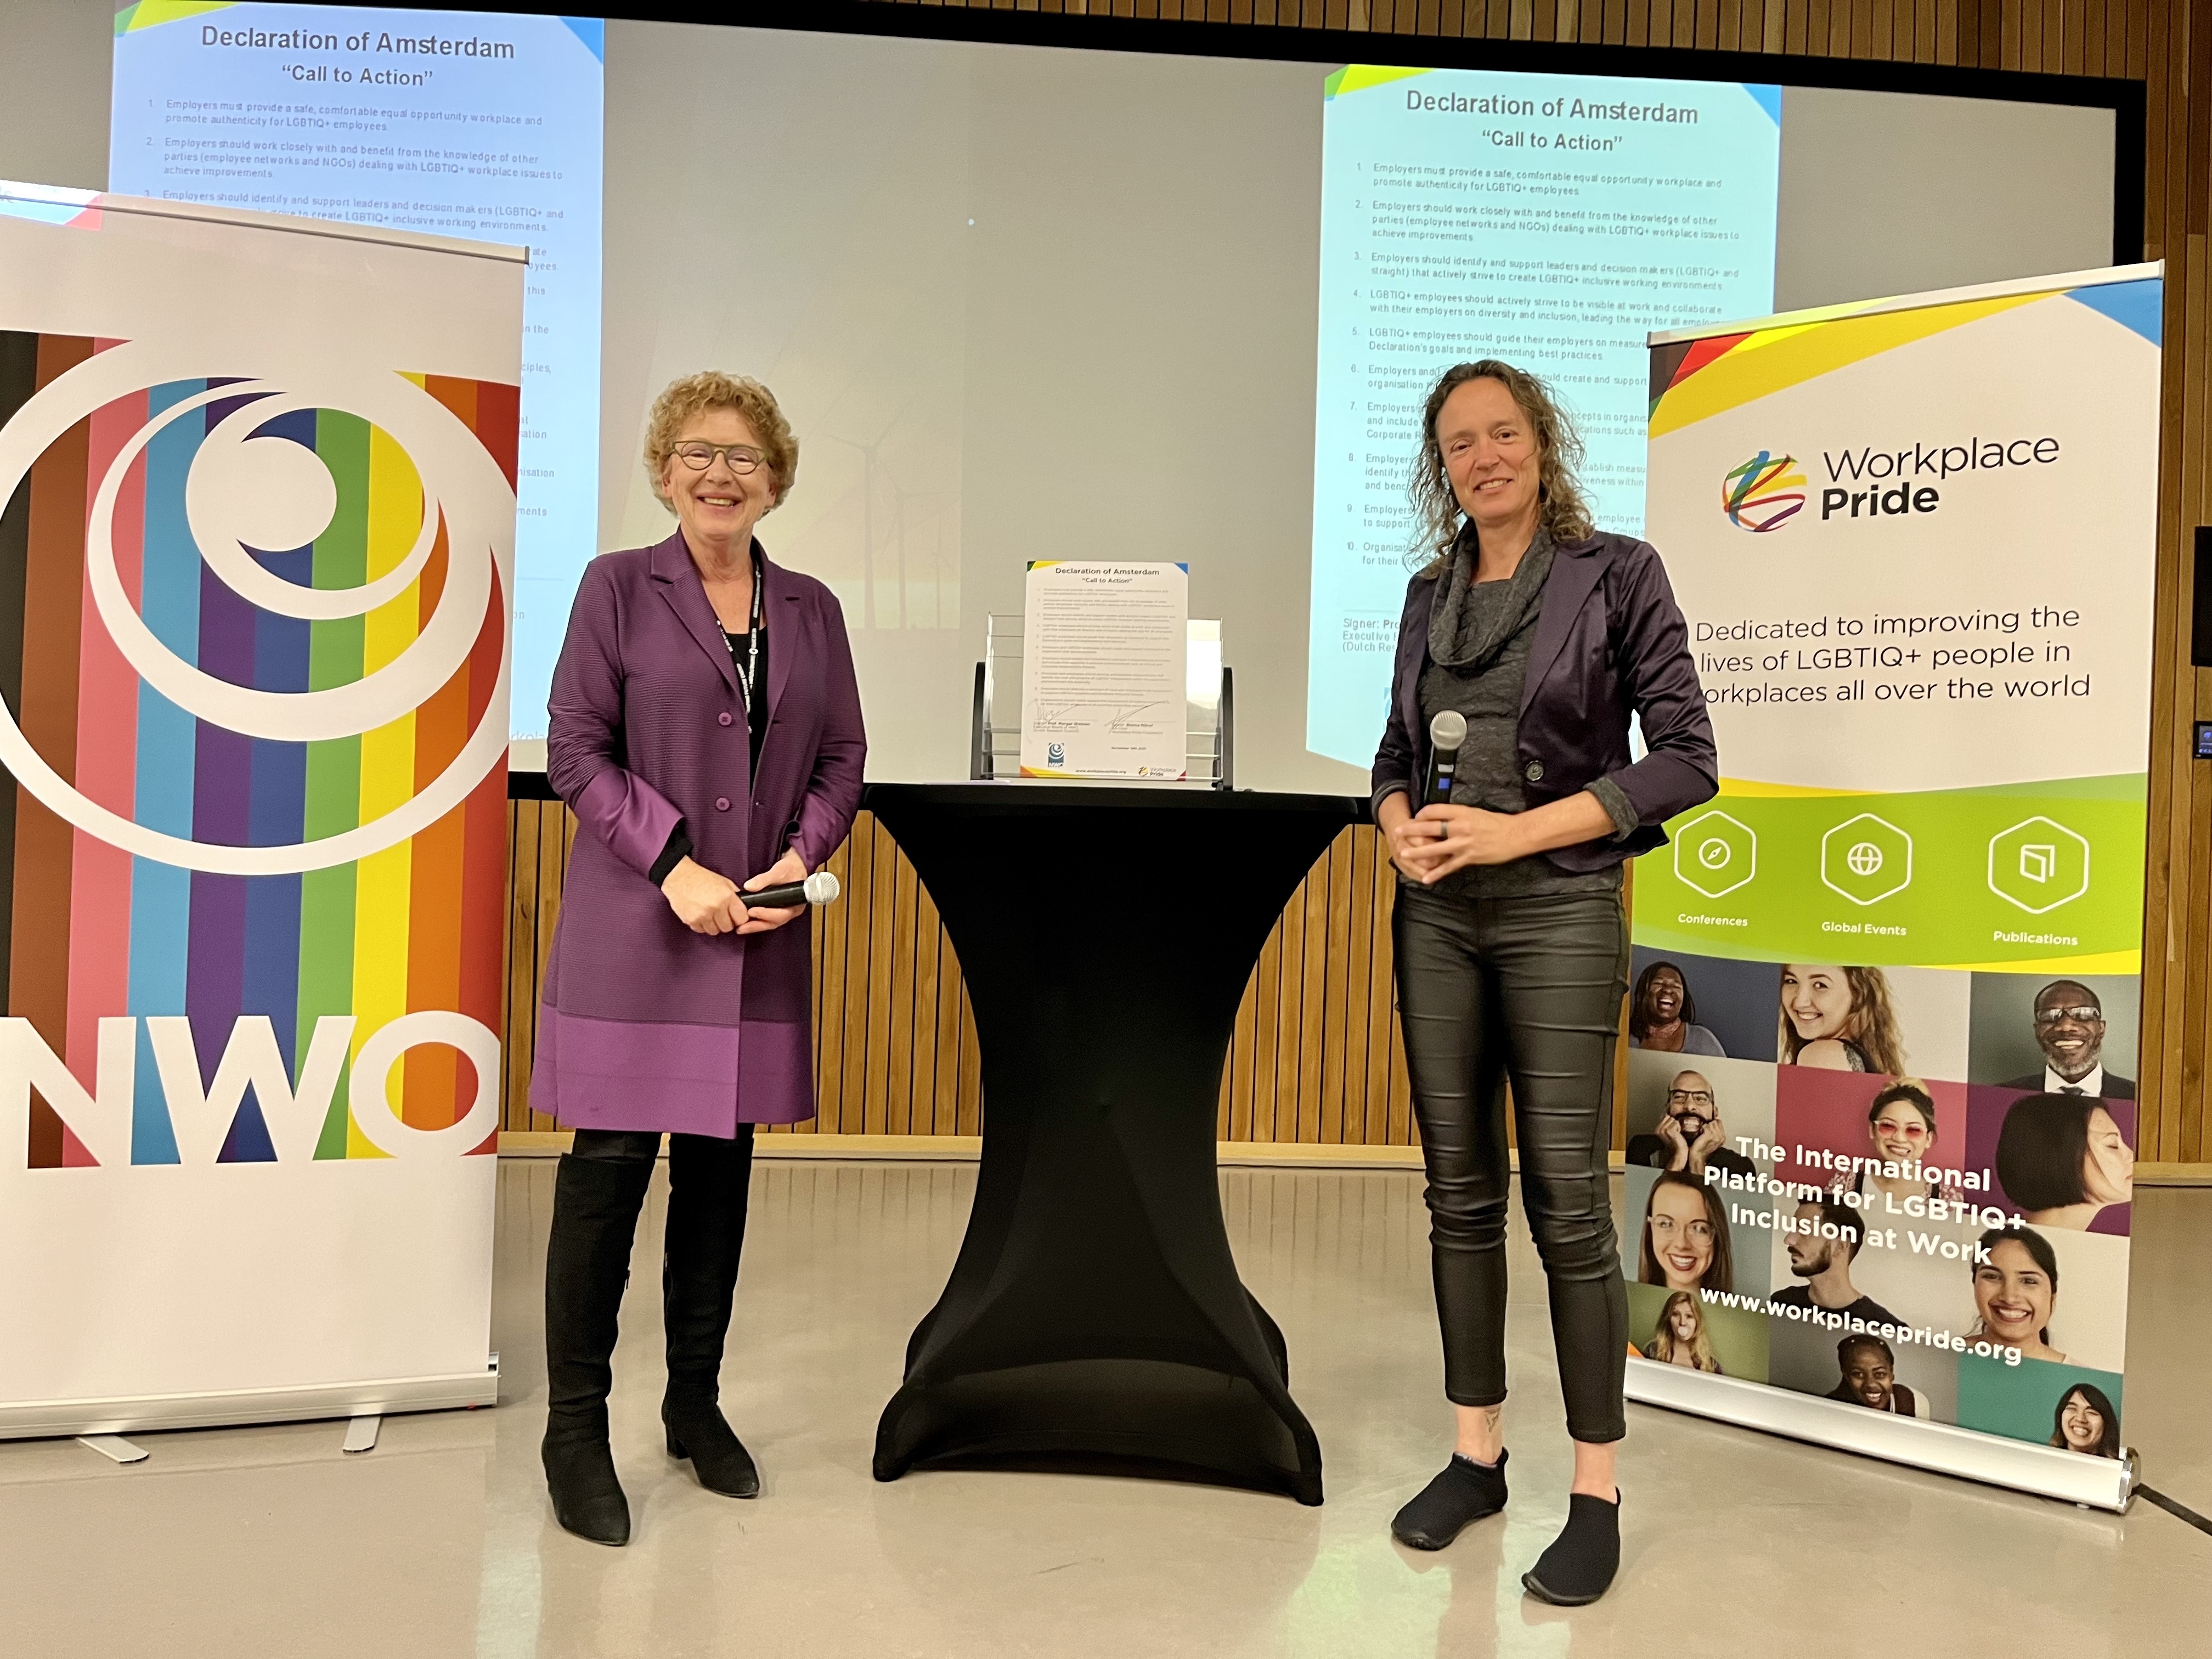 Margot Weijnen and Bianca Nijhof signing the Declaration of Amsterdam